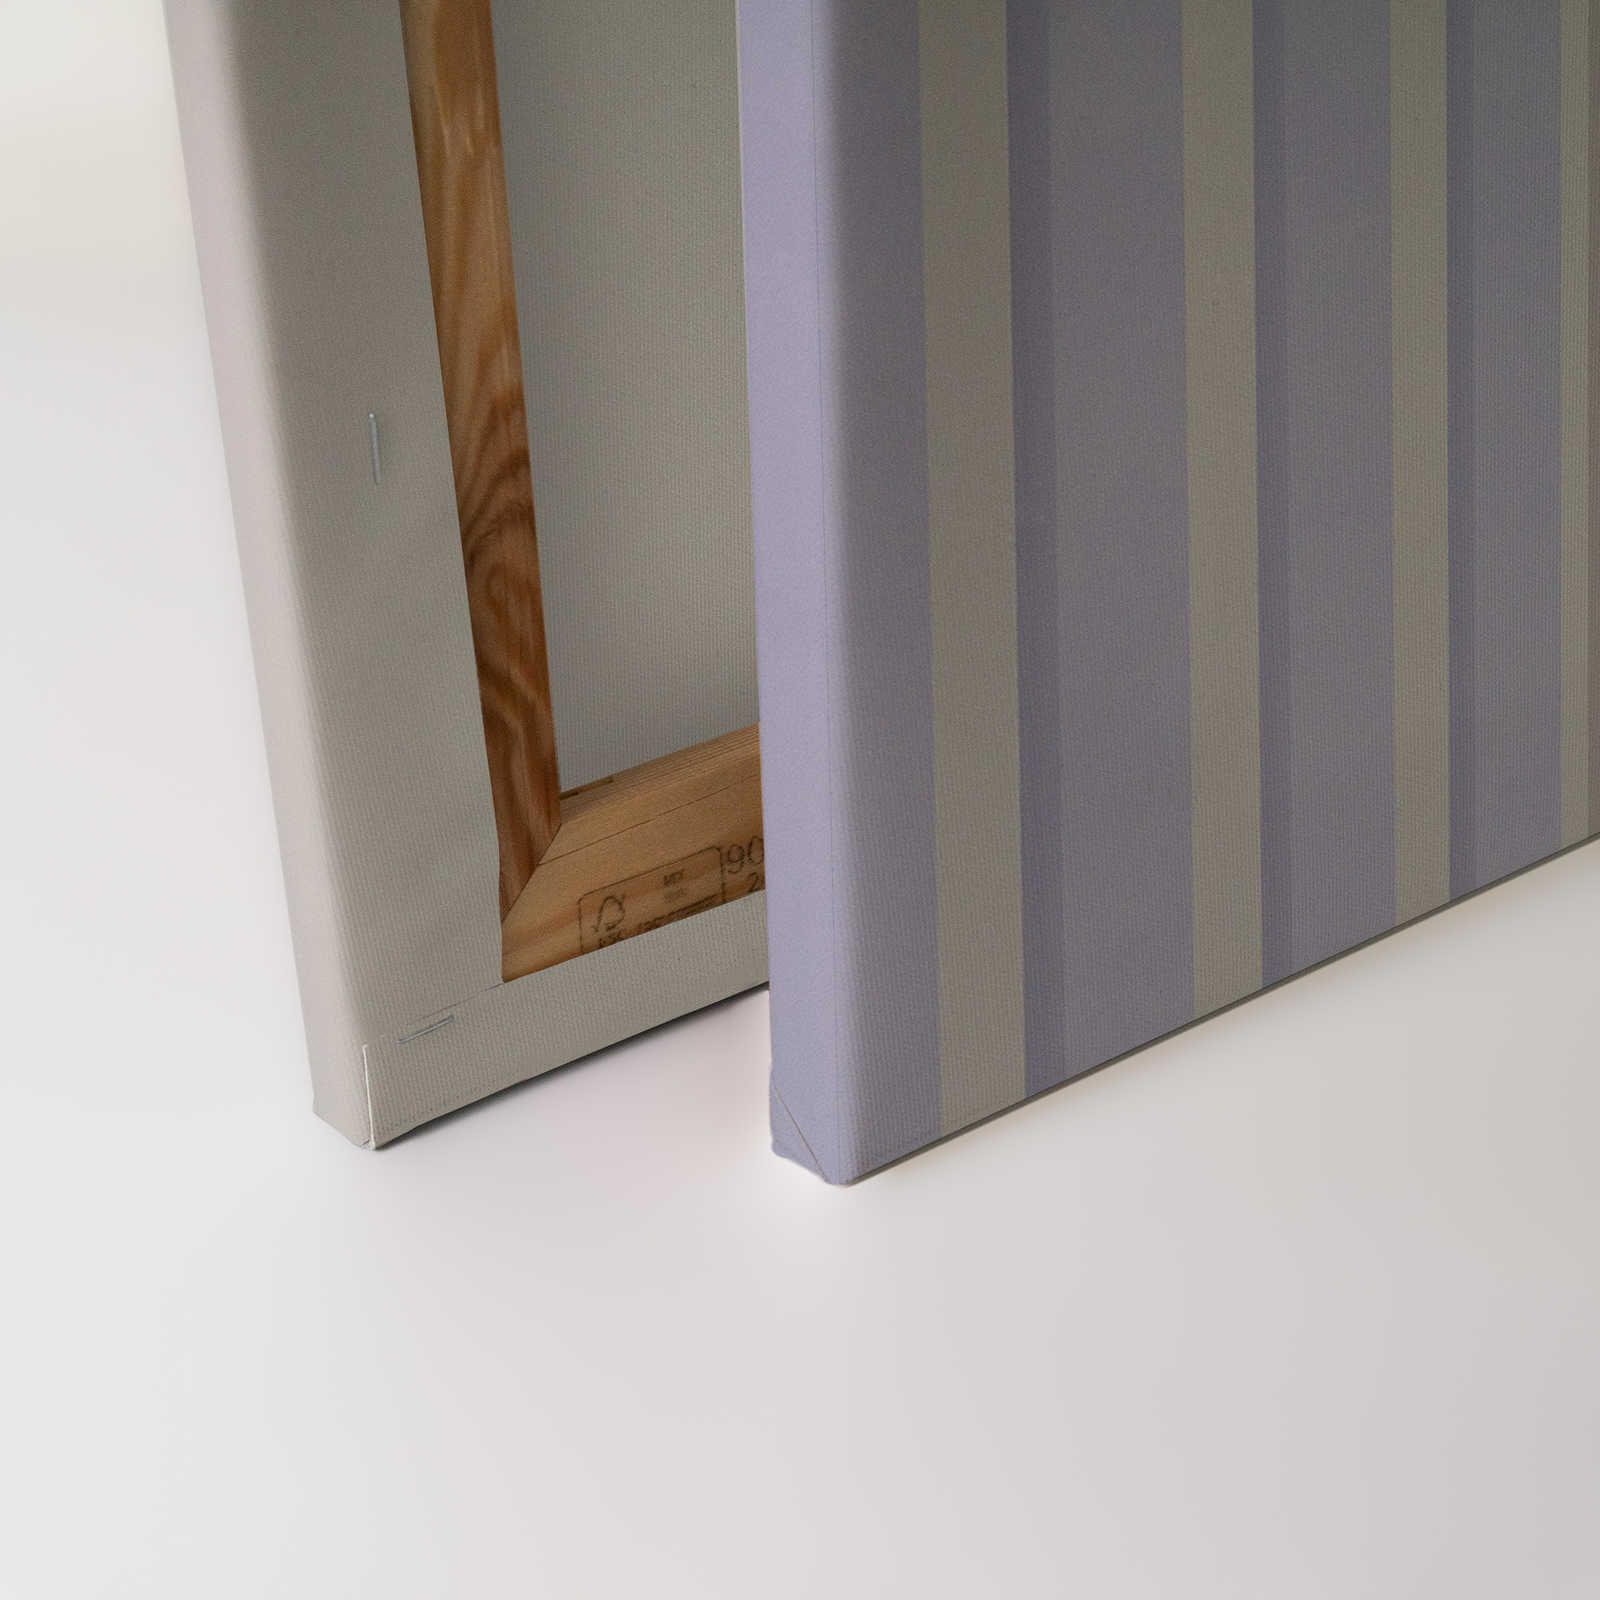             Illusion Room 1 - Toile 3D rayée lilas et grise - 0,90 m x 0,60 m
        